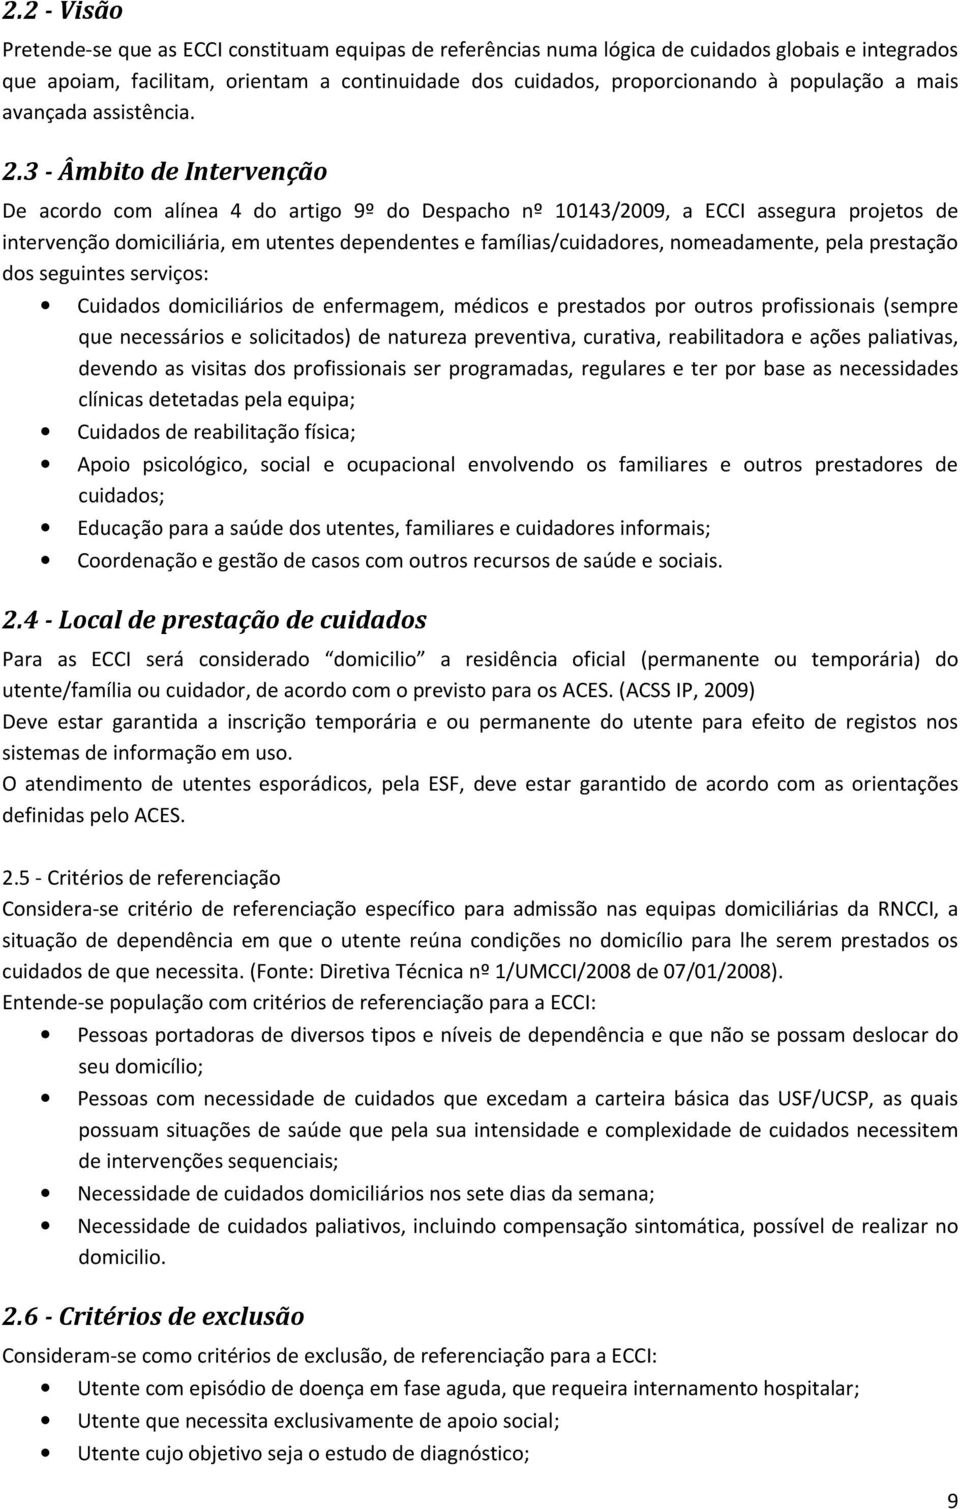 Manual de Procedimentos. Para implementação e desenvolvimento da ECCI - PDF  Free Download